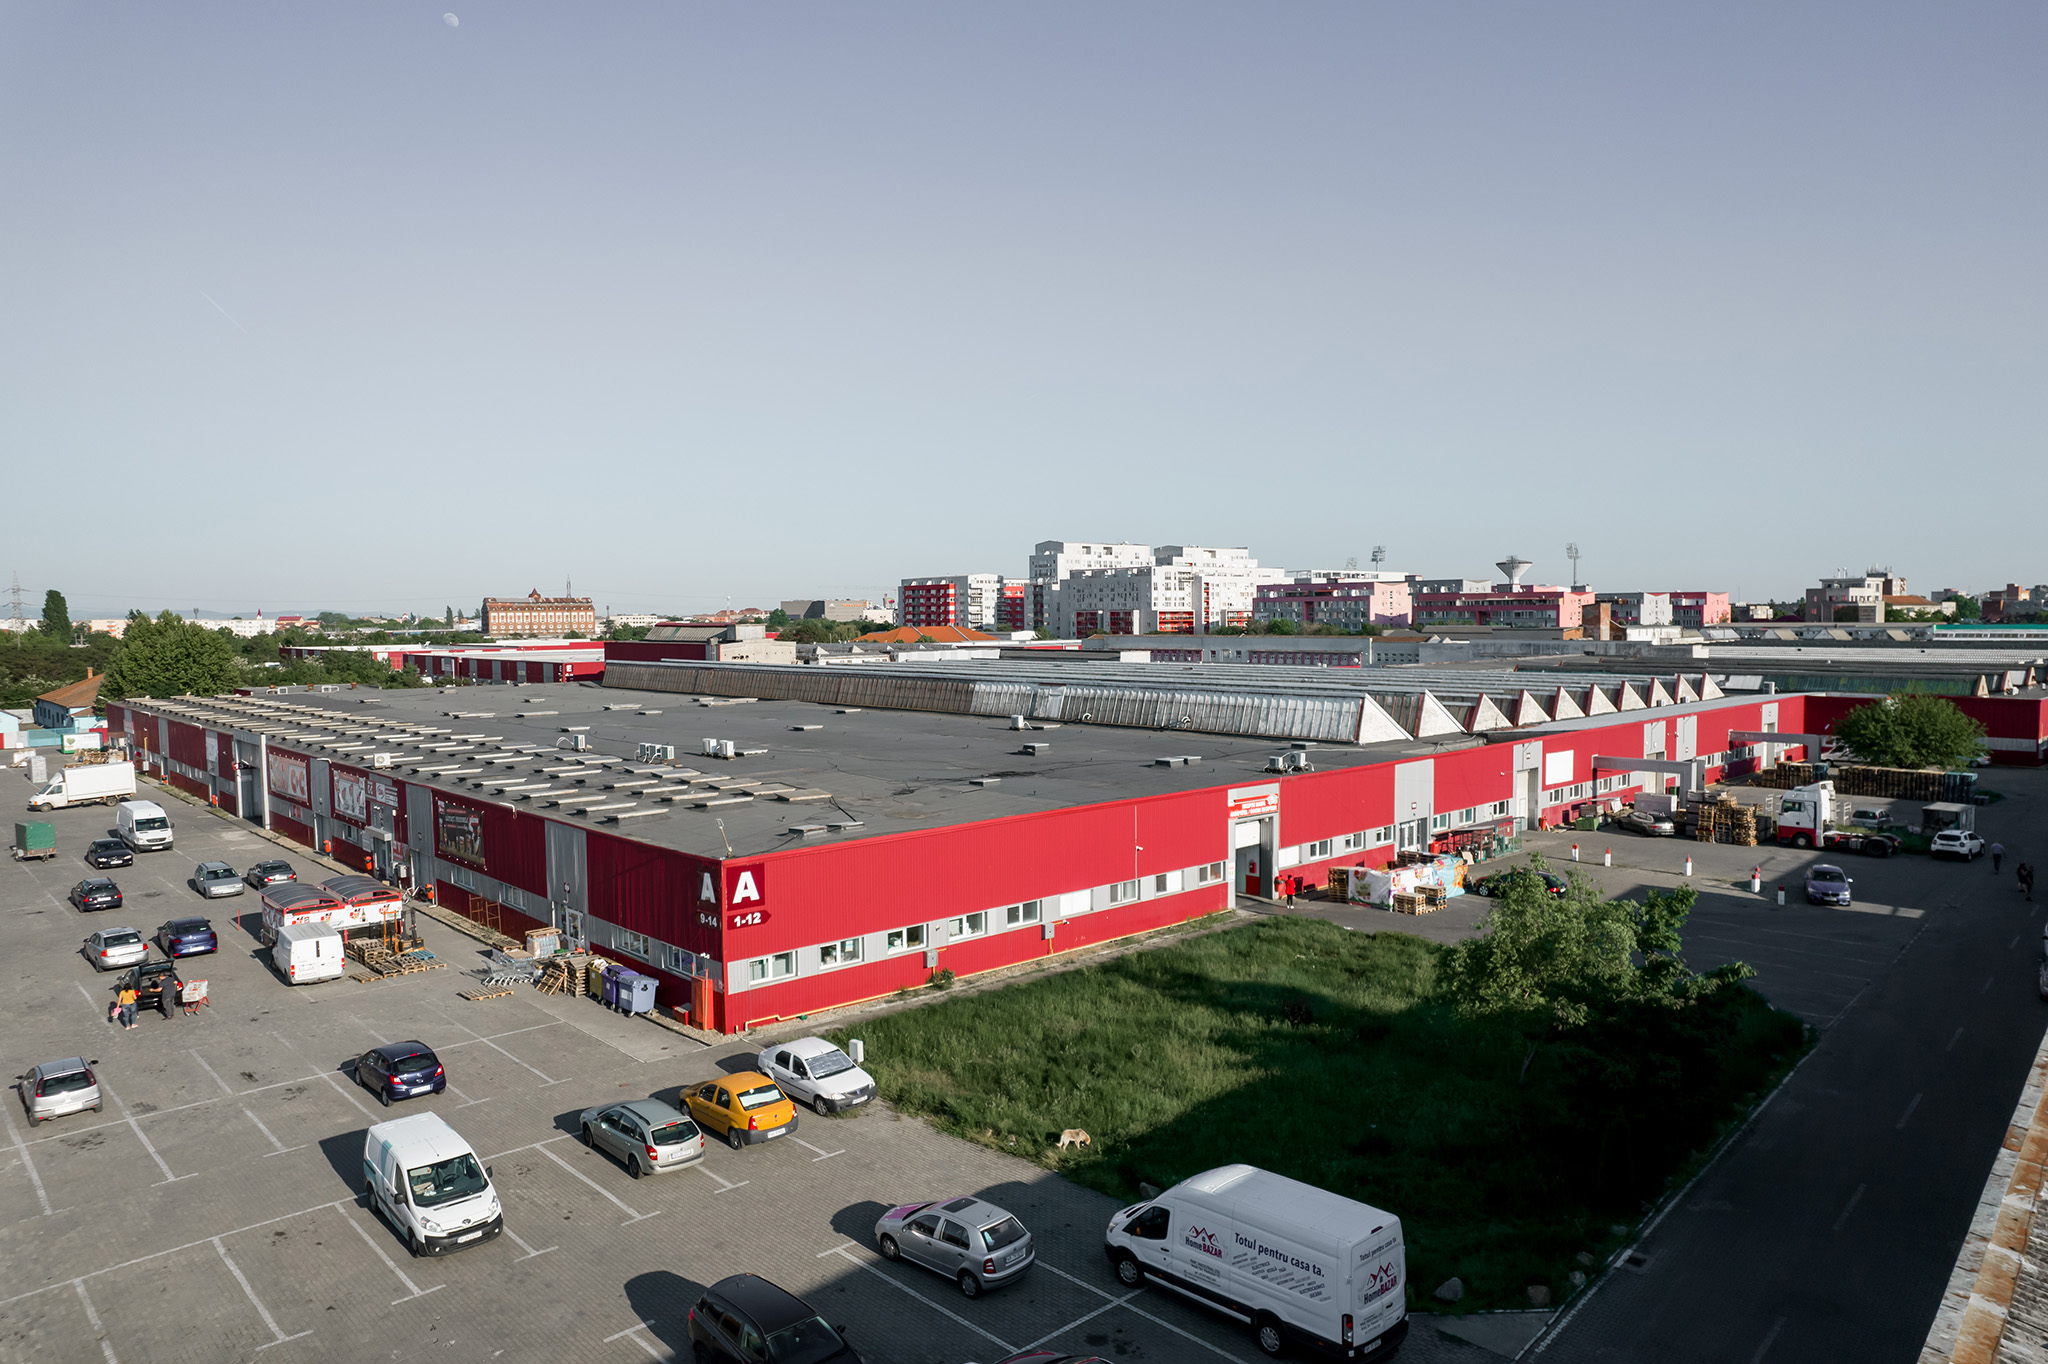 Arad Business Park a fost achiziționat de dezvoltatorul belgian WDP, unul dintre cei mai activi jucători din sectorul spațiilor logistice. Există interes pentru proiecte de proximitate